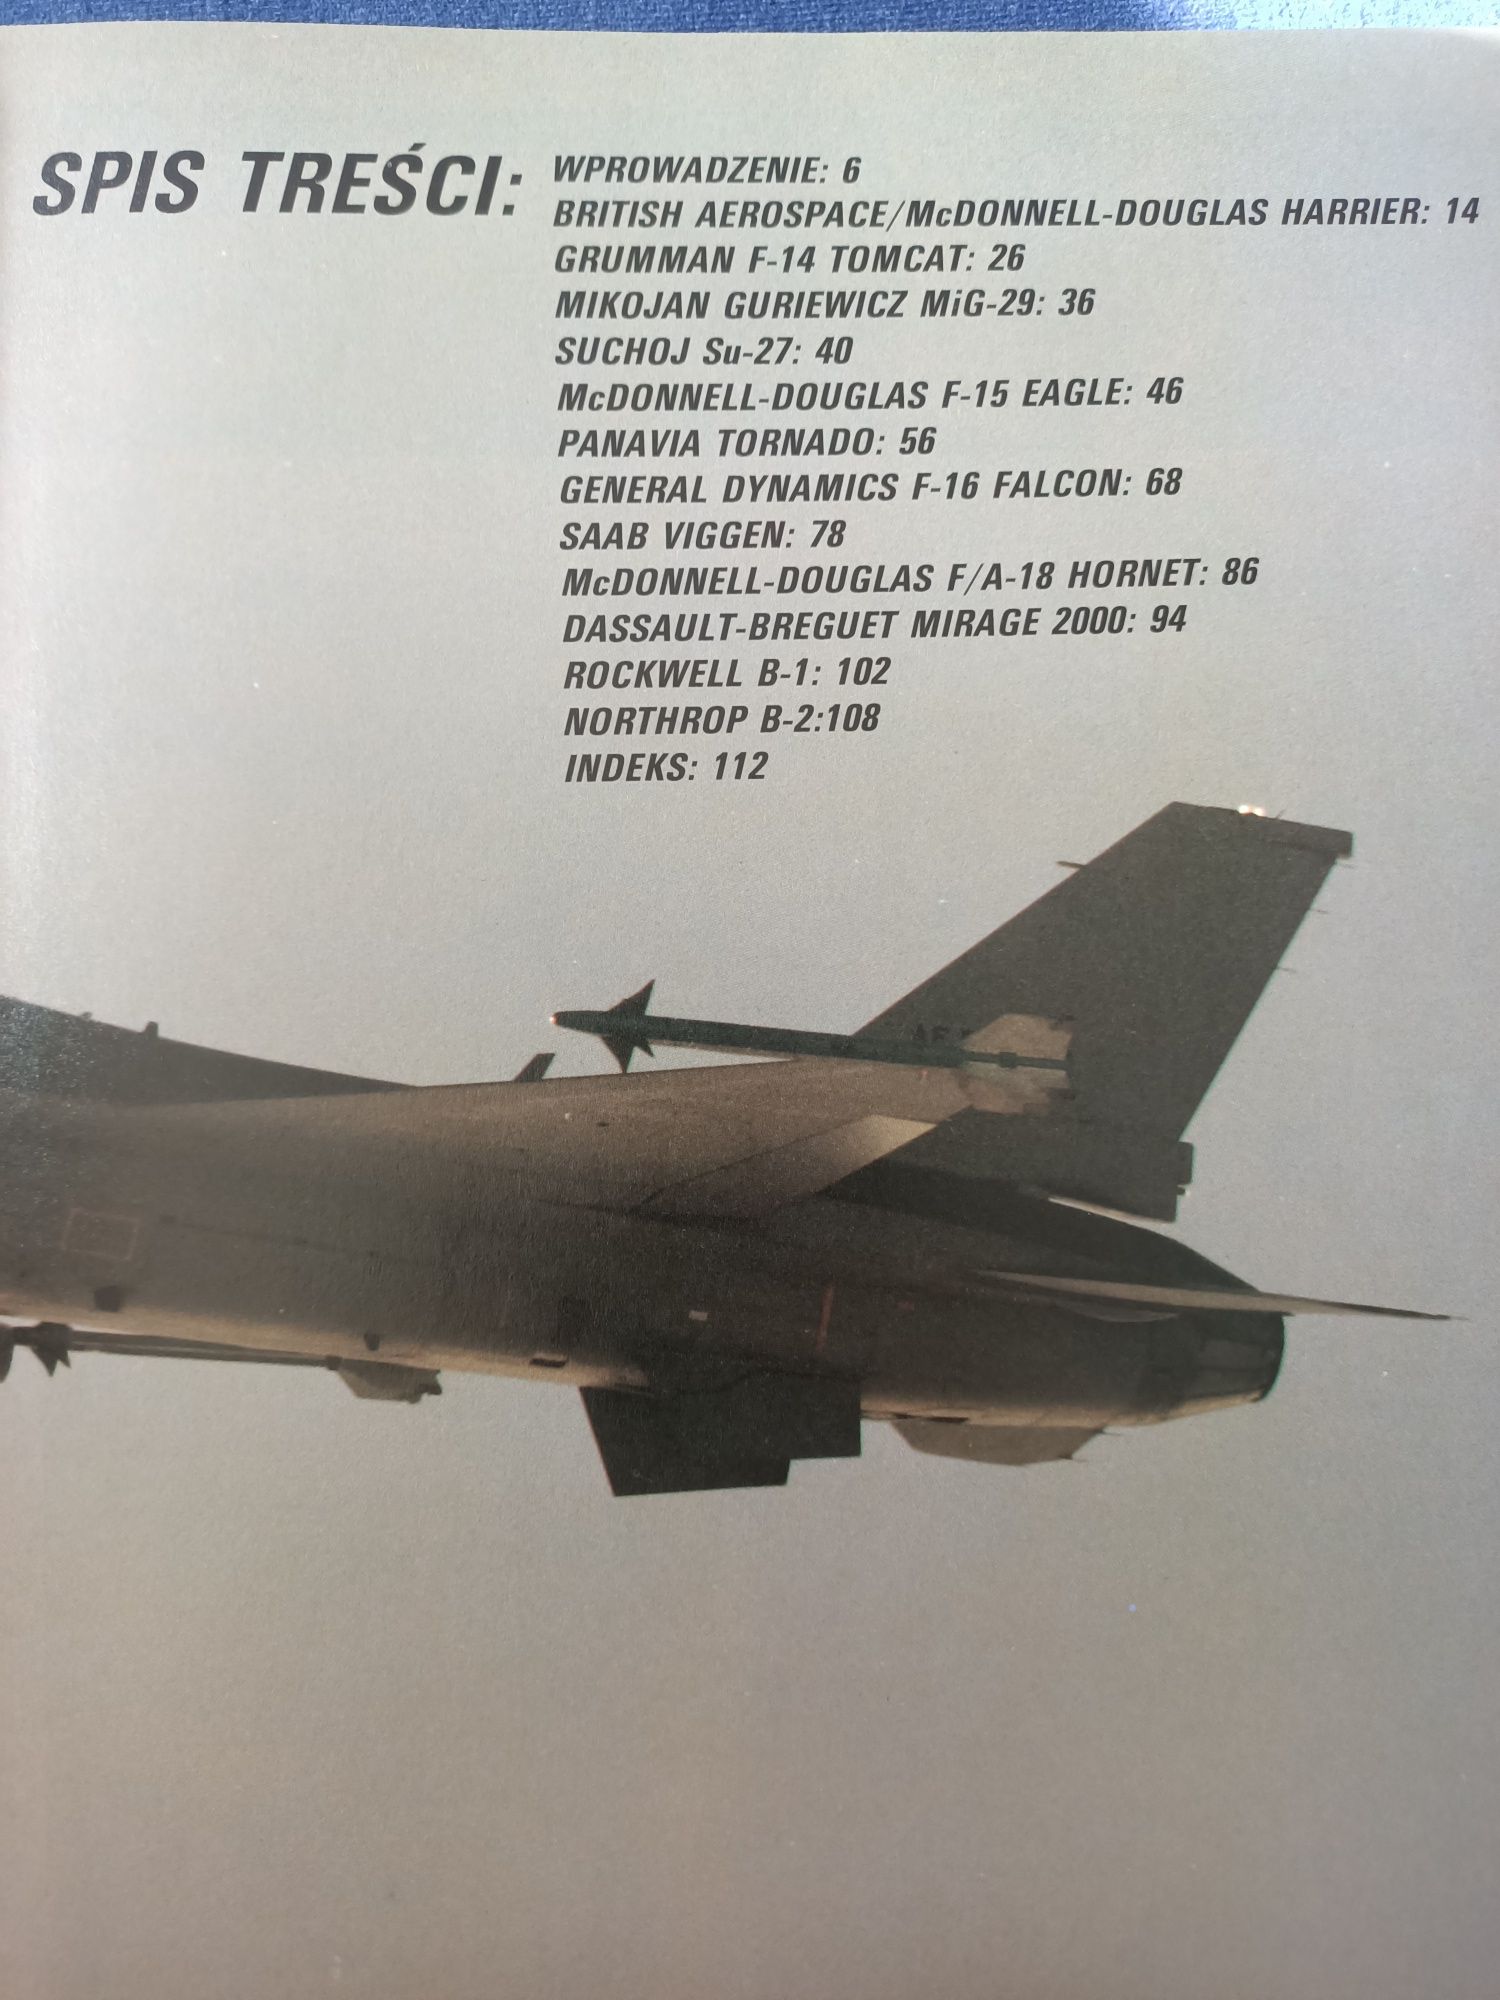 Samoloty bojowe lat dziewięćdziesiątych + plakat Bill Yenne